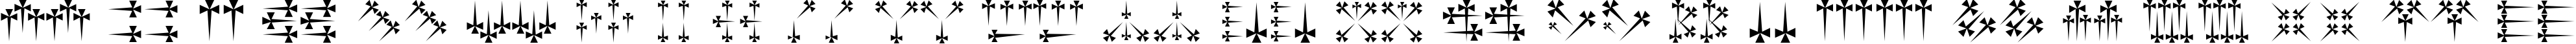 Пример написания английского алфавита шрифтом Daggers Regular